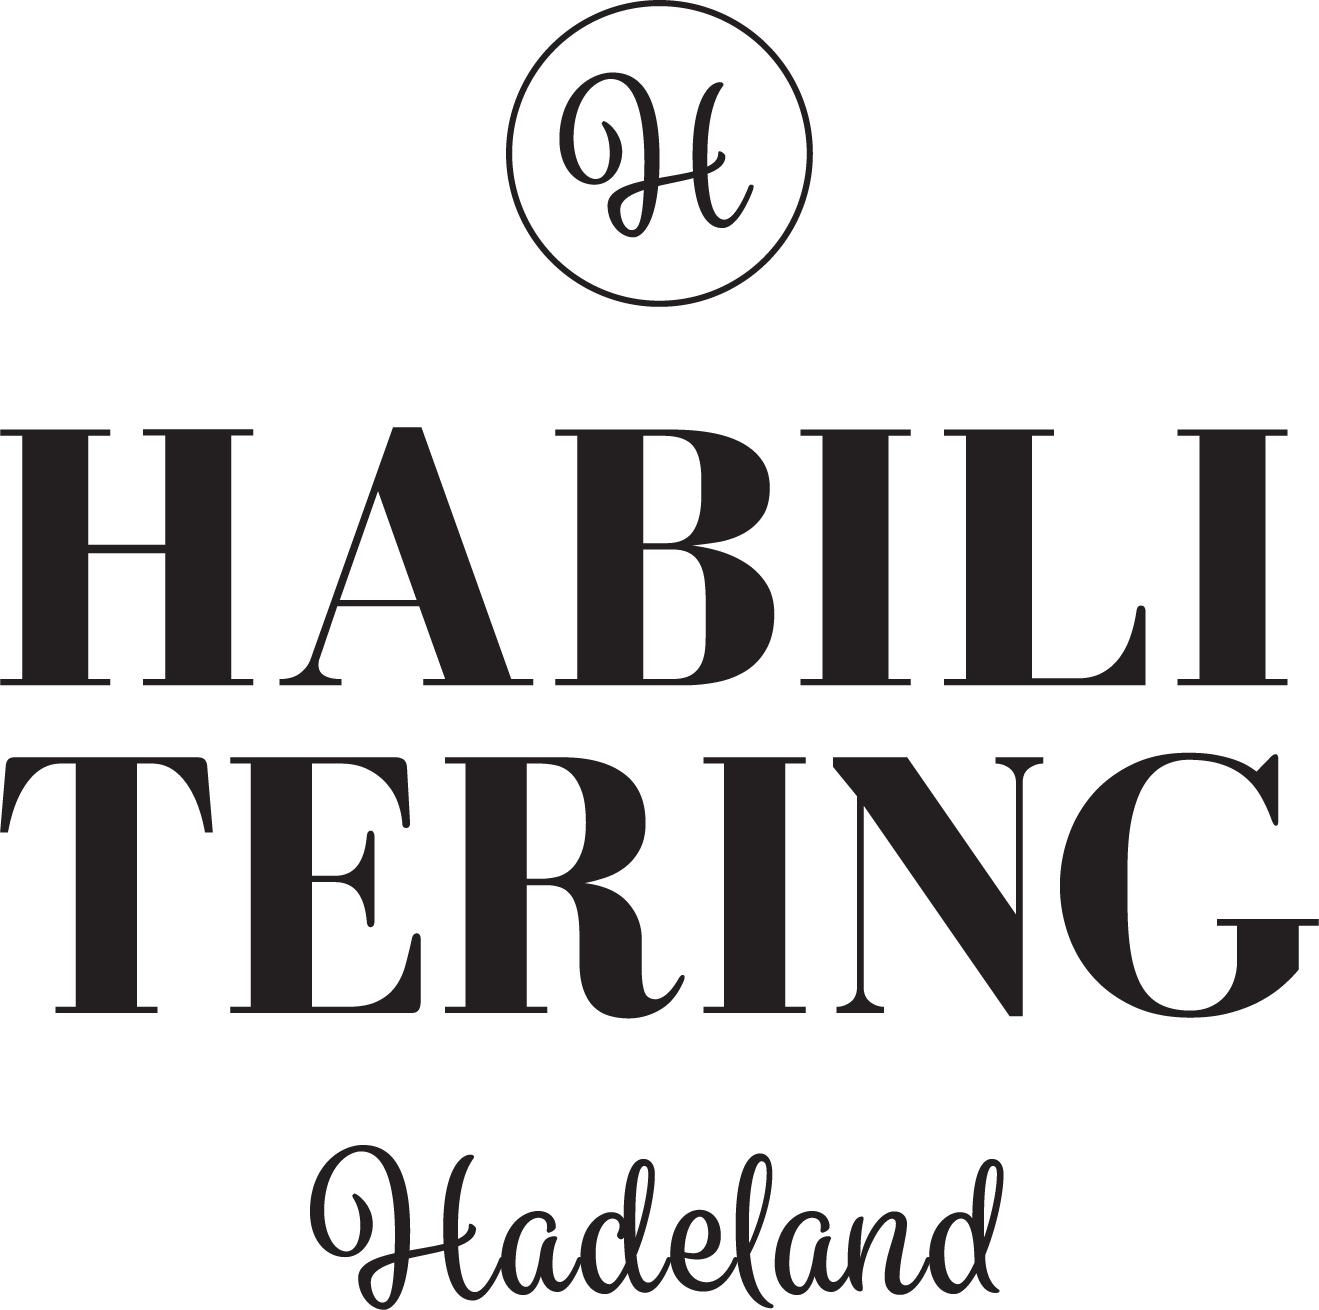 HadelandHabilitering_sort